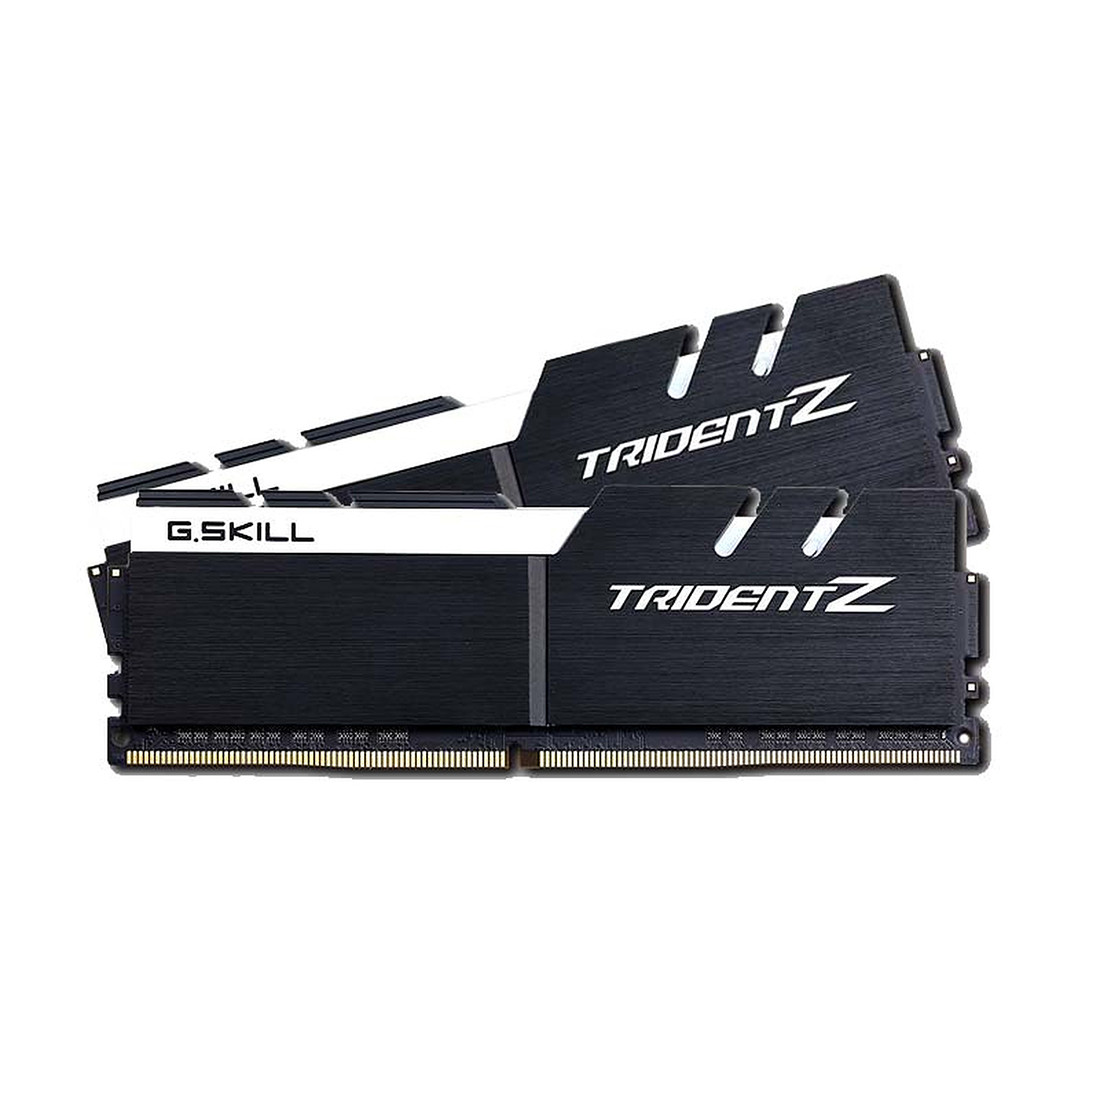 Комплект модулей памяти  G.SKILL  TridentZ F4-3200C16D-32GTZKW (Kit 2x16GB)  DDR4  32GB  DIMM   Черный